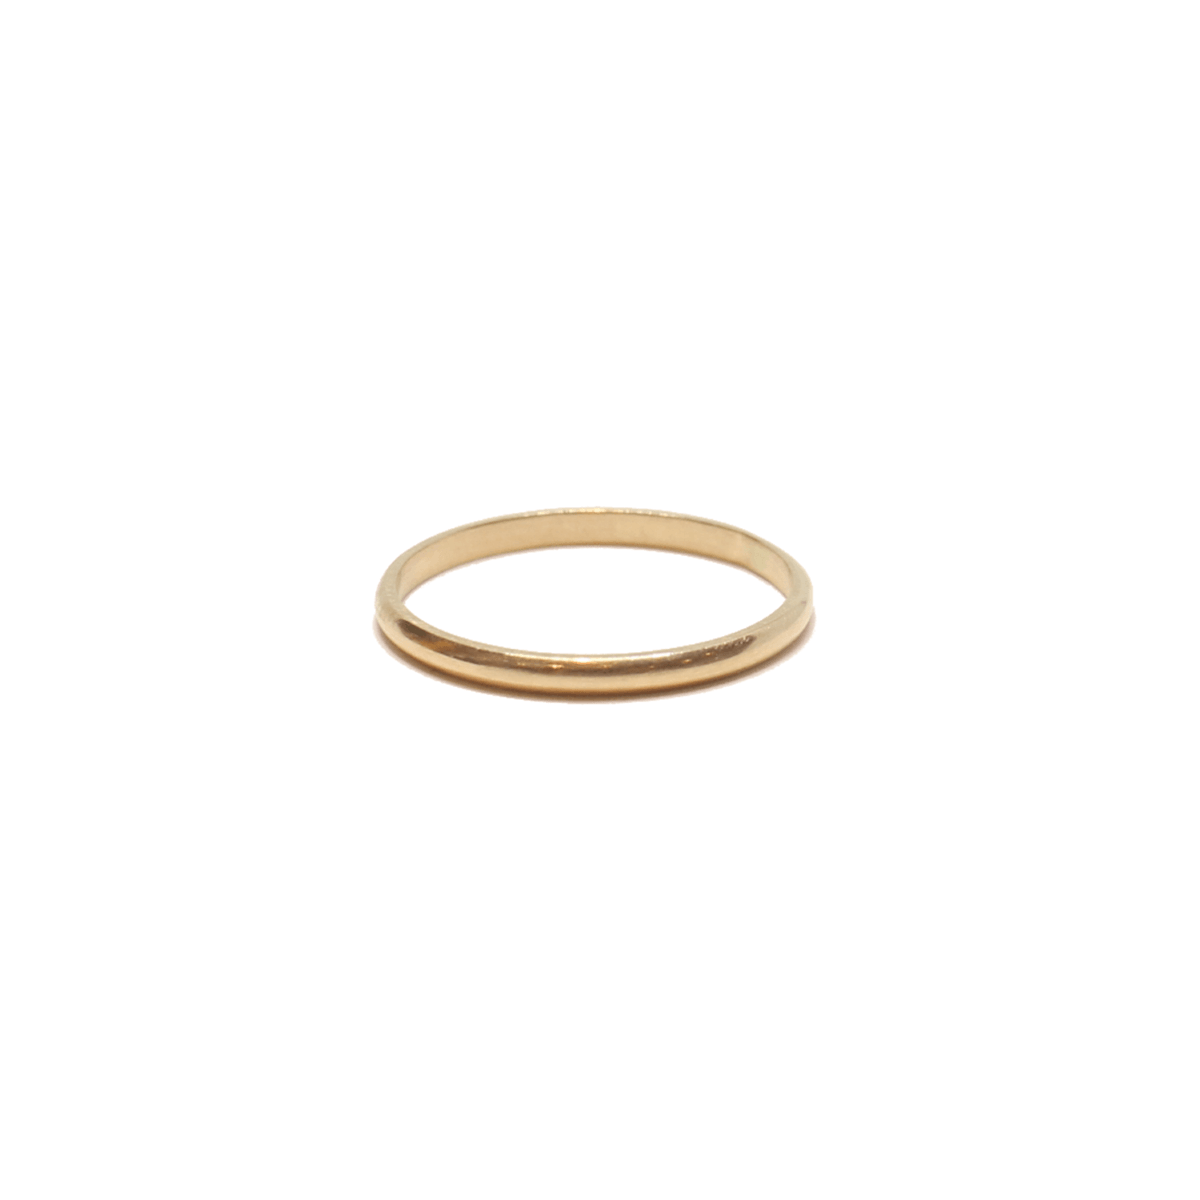 Solid 14k Gold Minimalist Ring - The Smart Minimalist